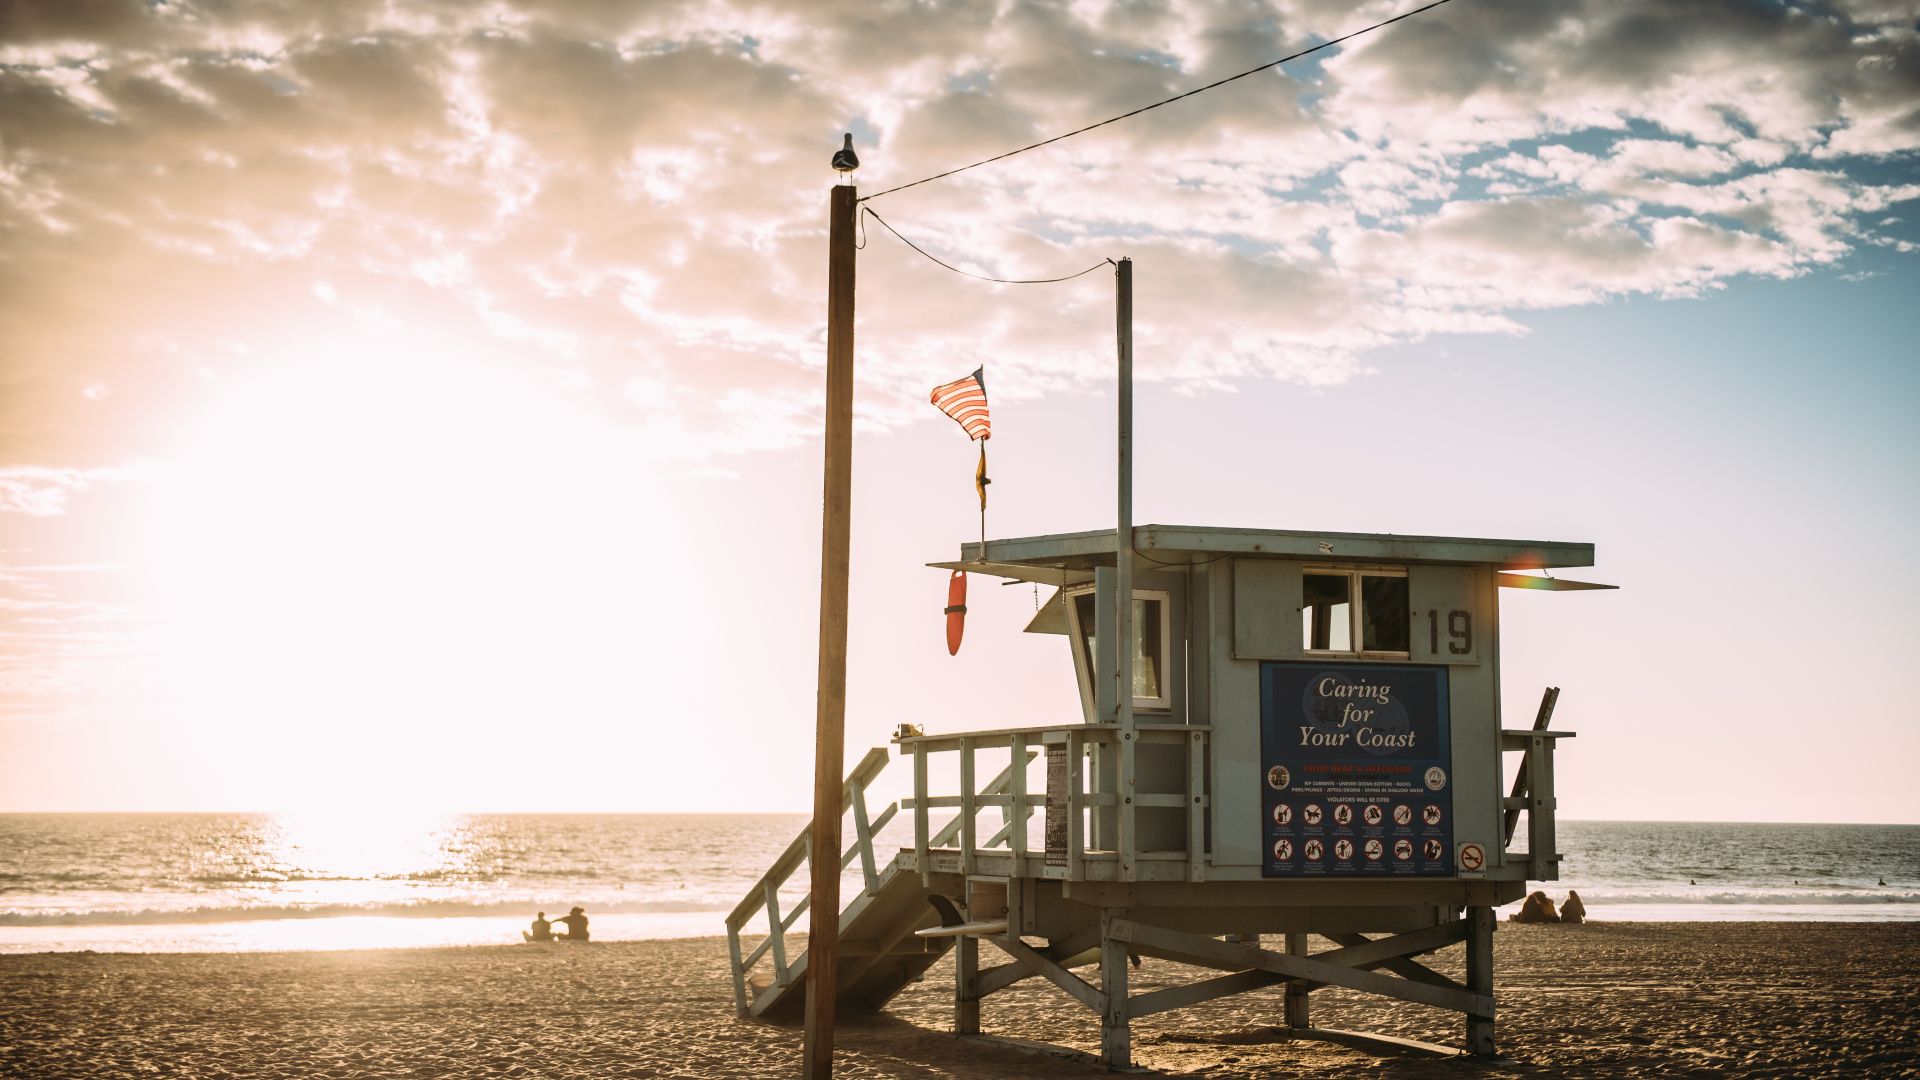 Лос Анджелес, пляж, Los Angeles, beach, USA, 5K (horizontal)